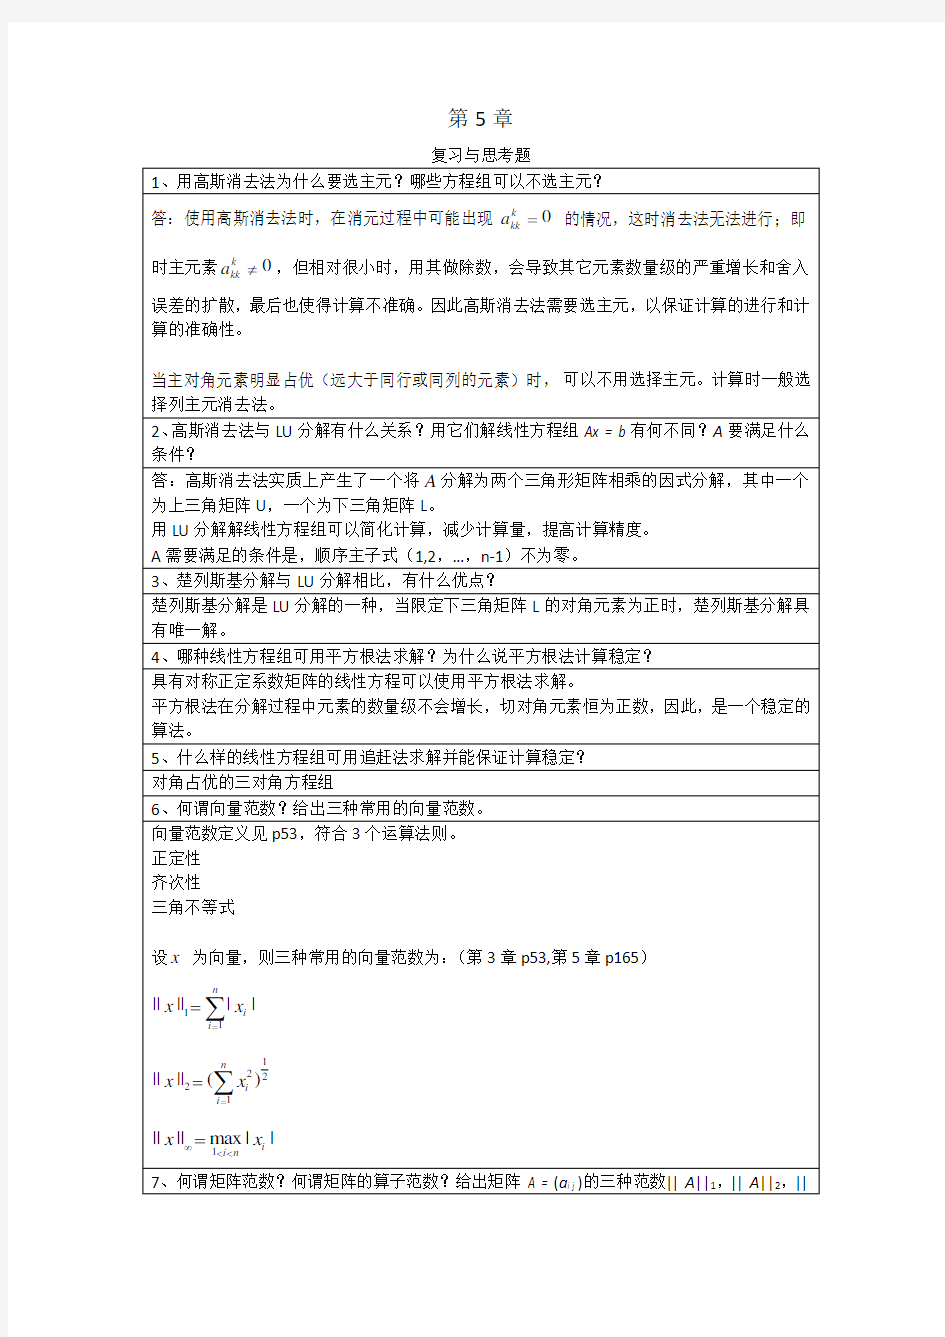 李庆扬-数值分析第五版第5章习题答案(20130808)